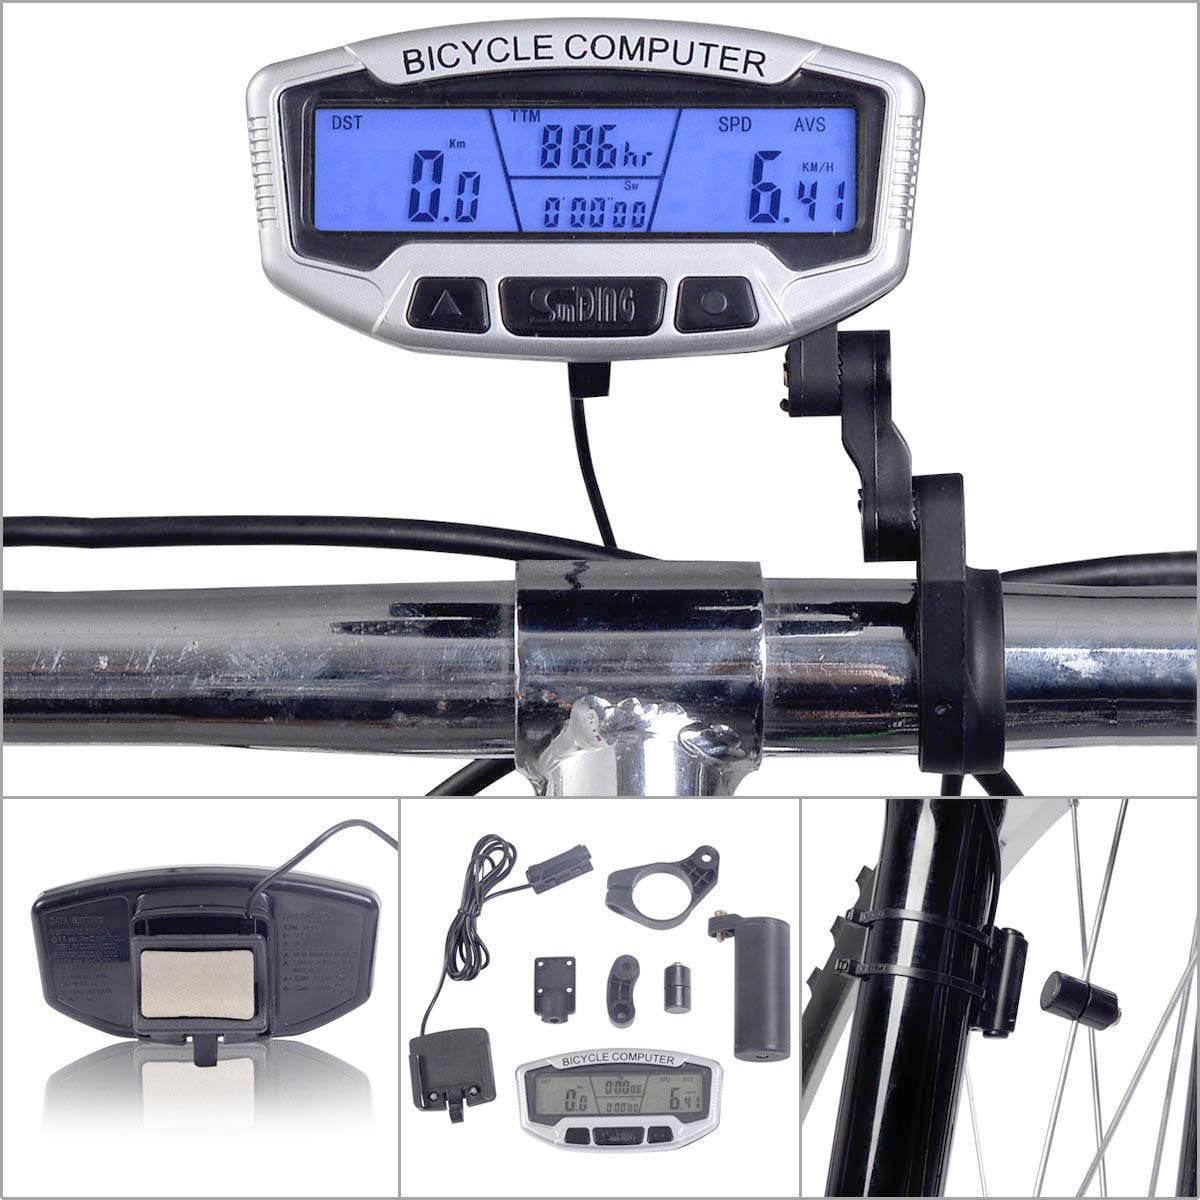 LCD Digital Waterproof Bike Odometer Velometer Bicycle Speedometer /ND